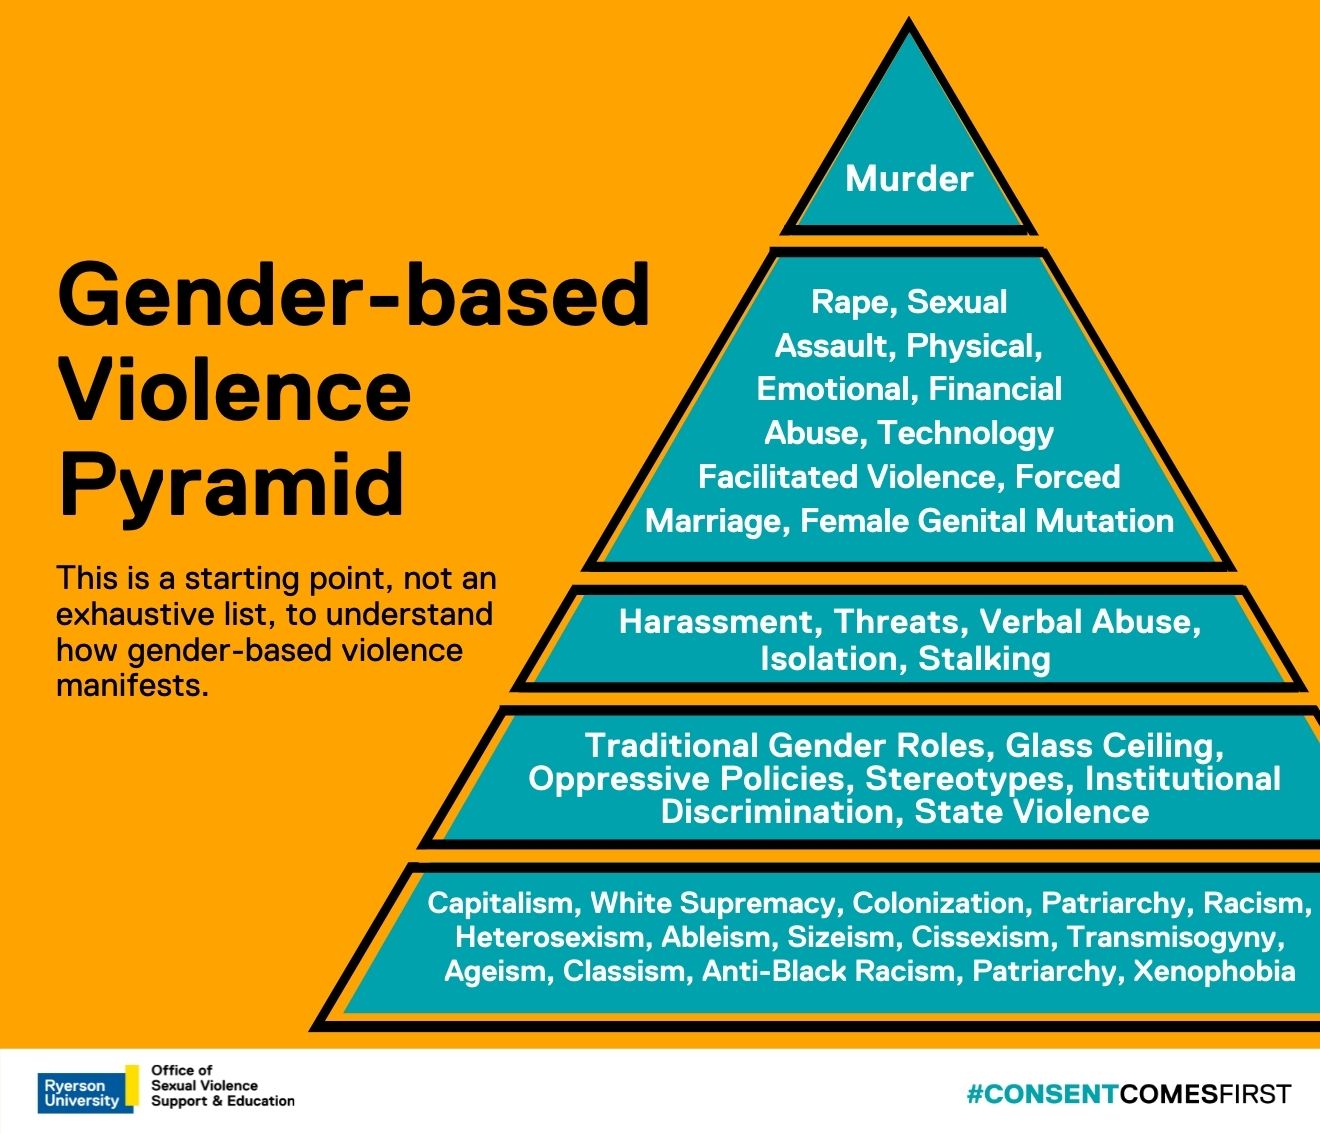 hypothesis on gender based violence